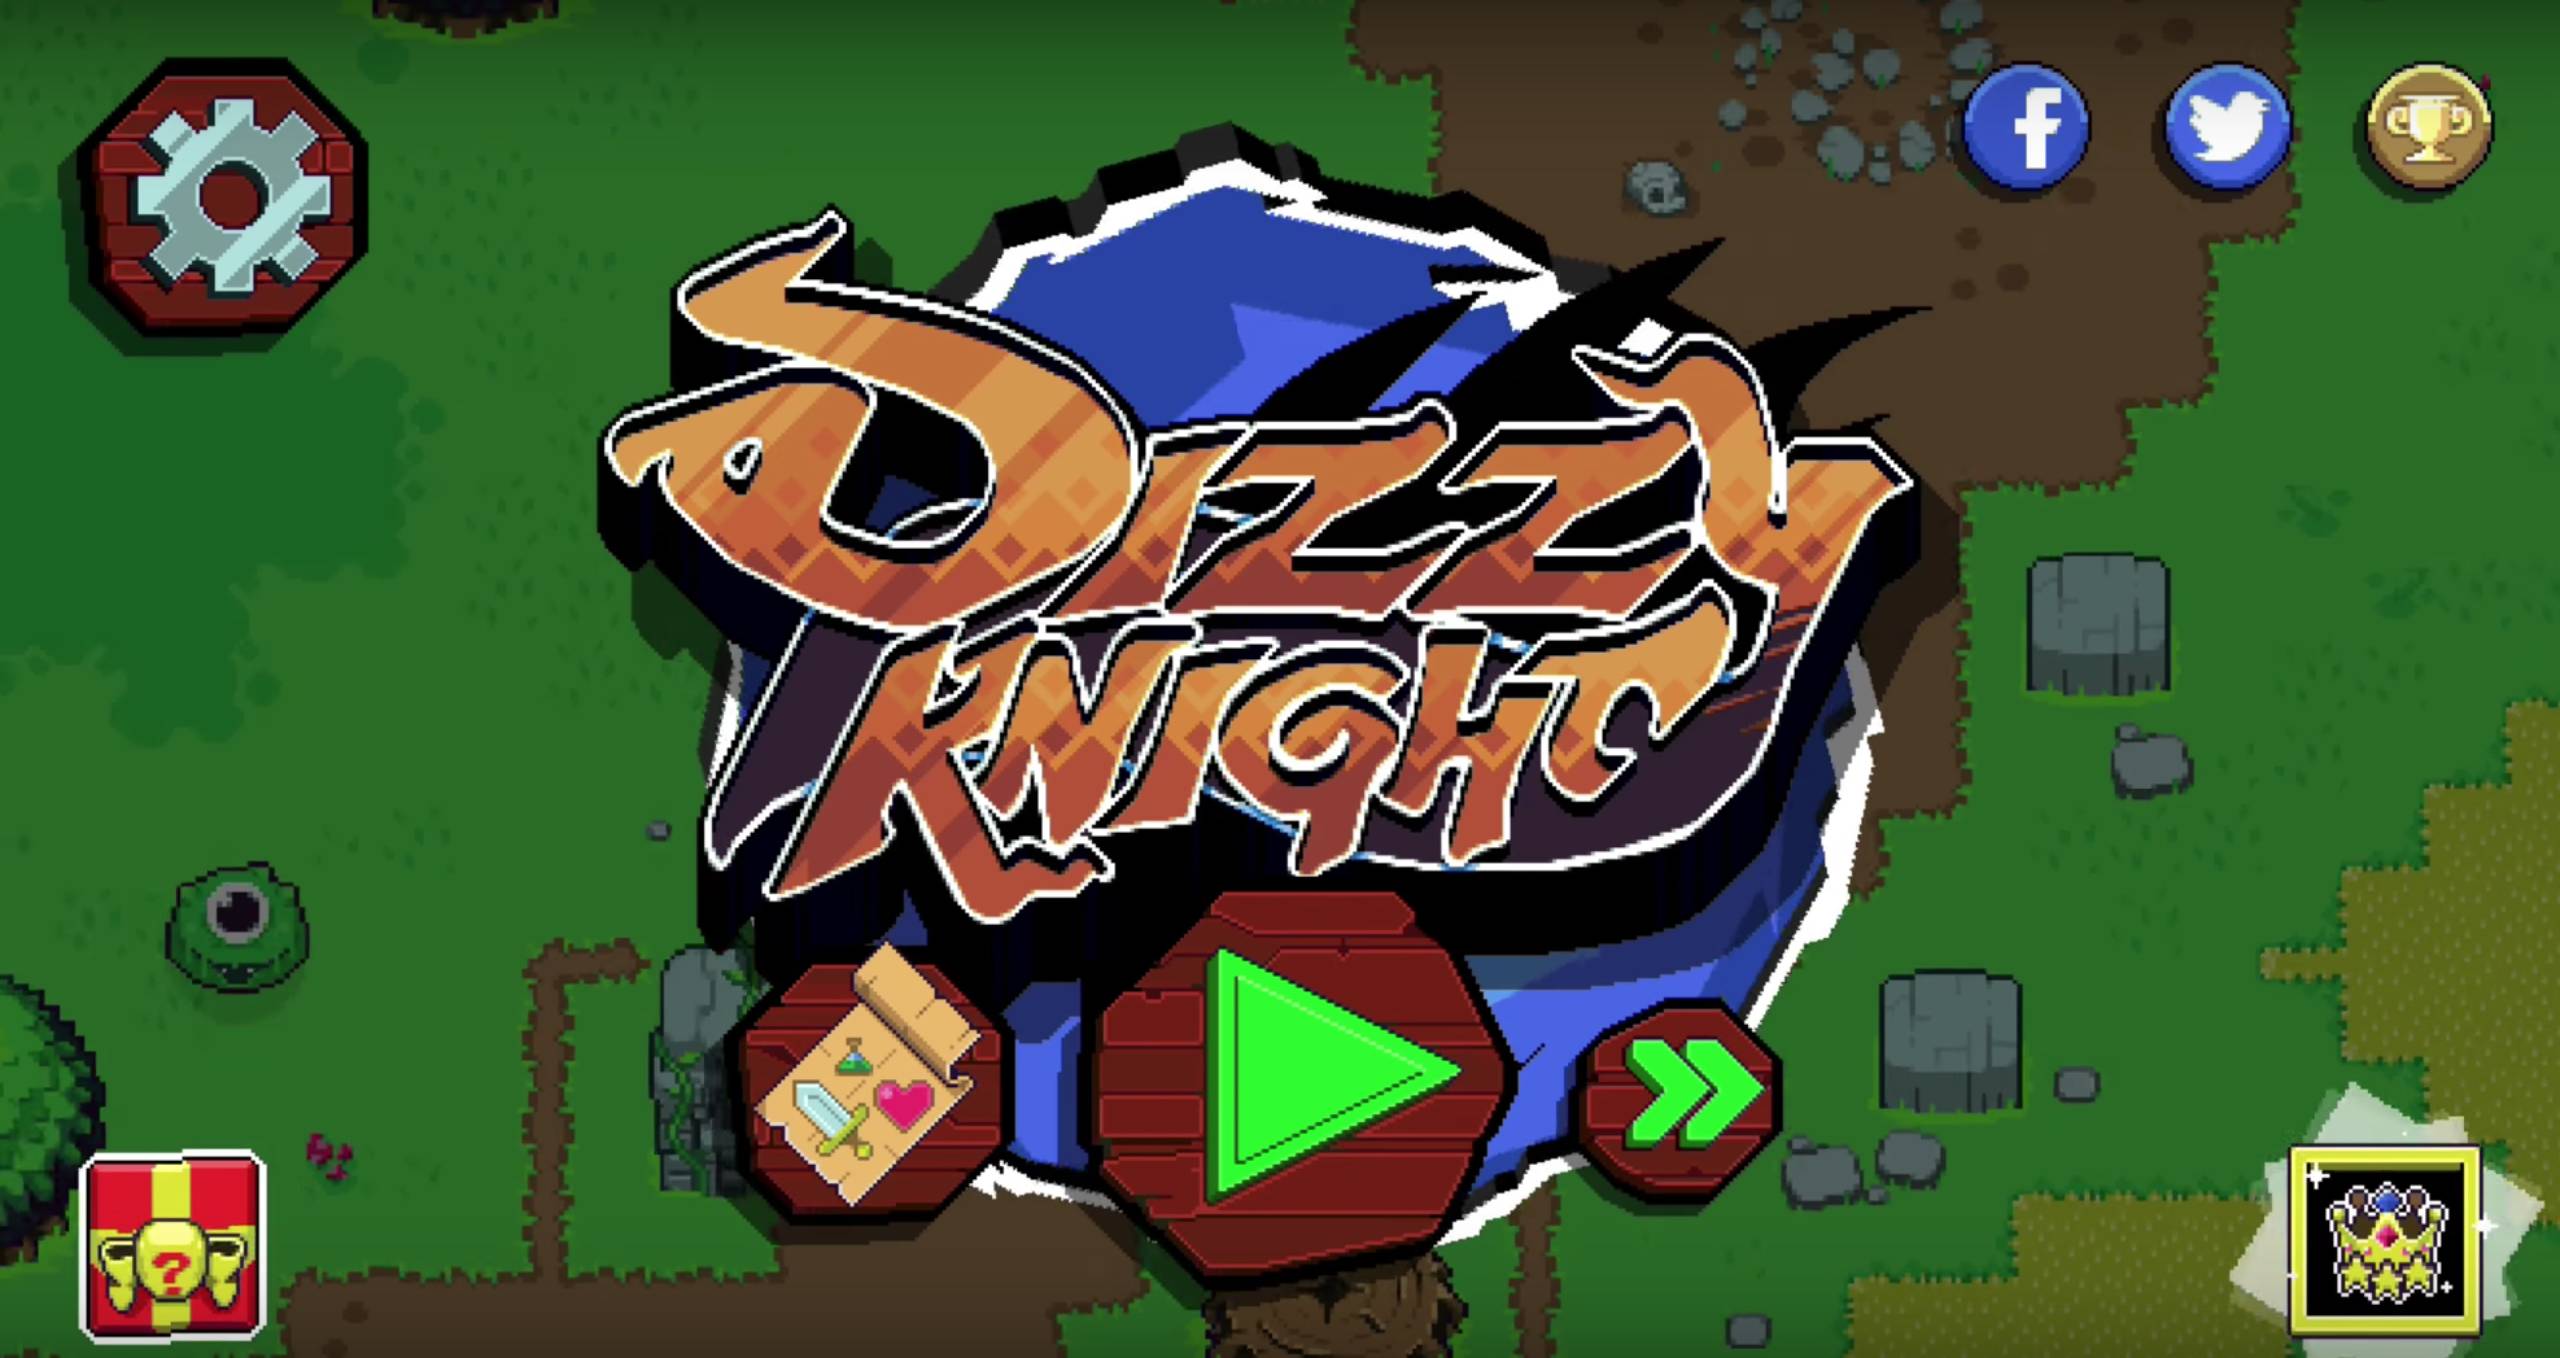 Dizzy Knight Tips, Cheats and Strategies